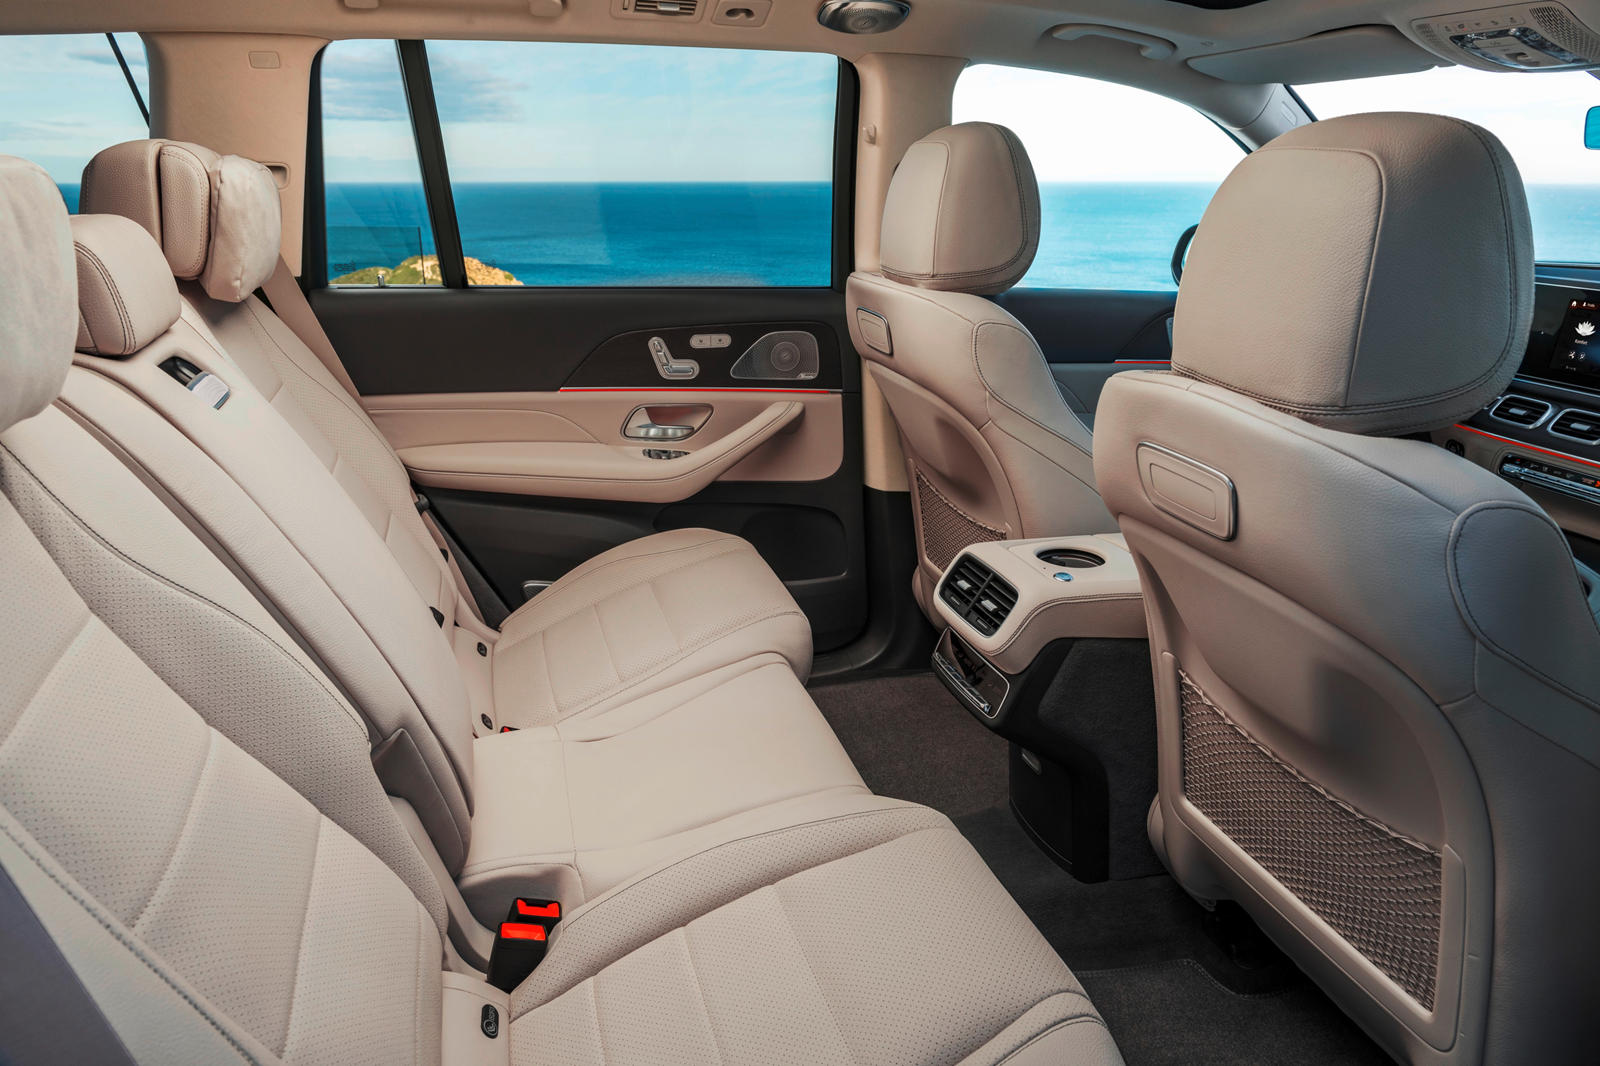 Mercedes-Benz GLS 500 interior - Seats